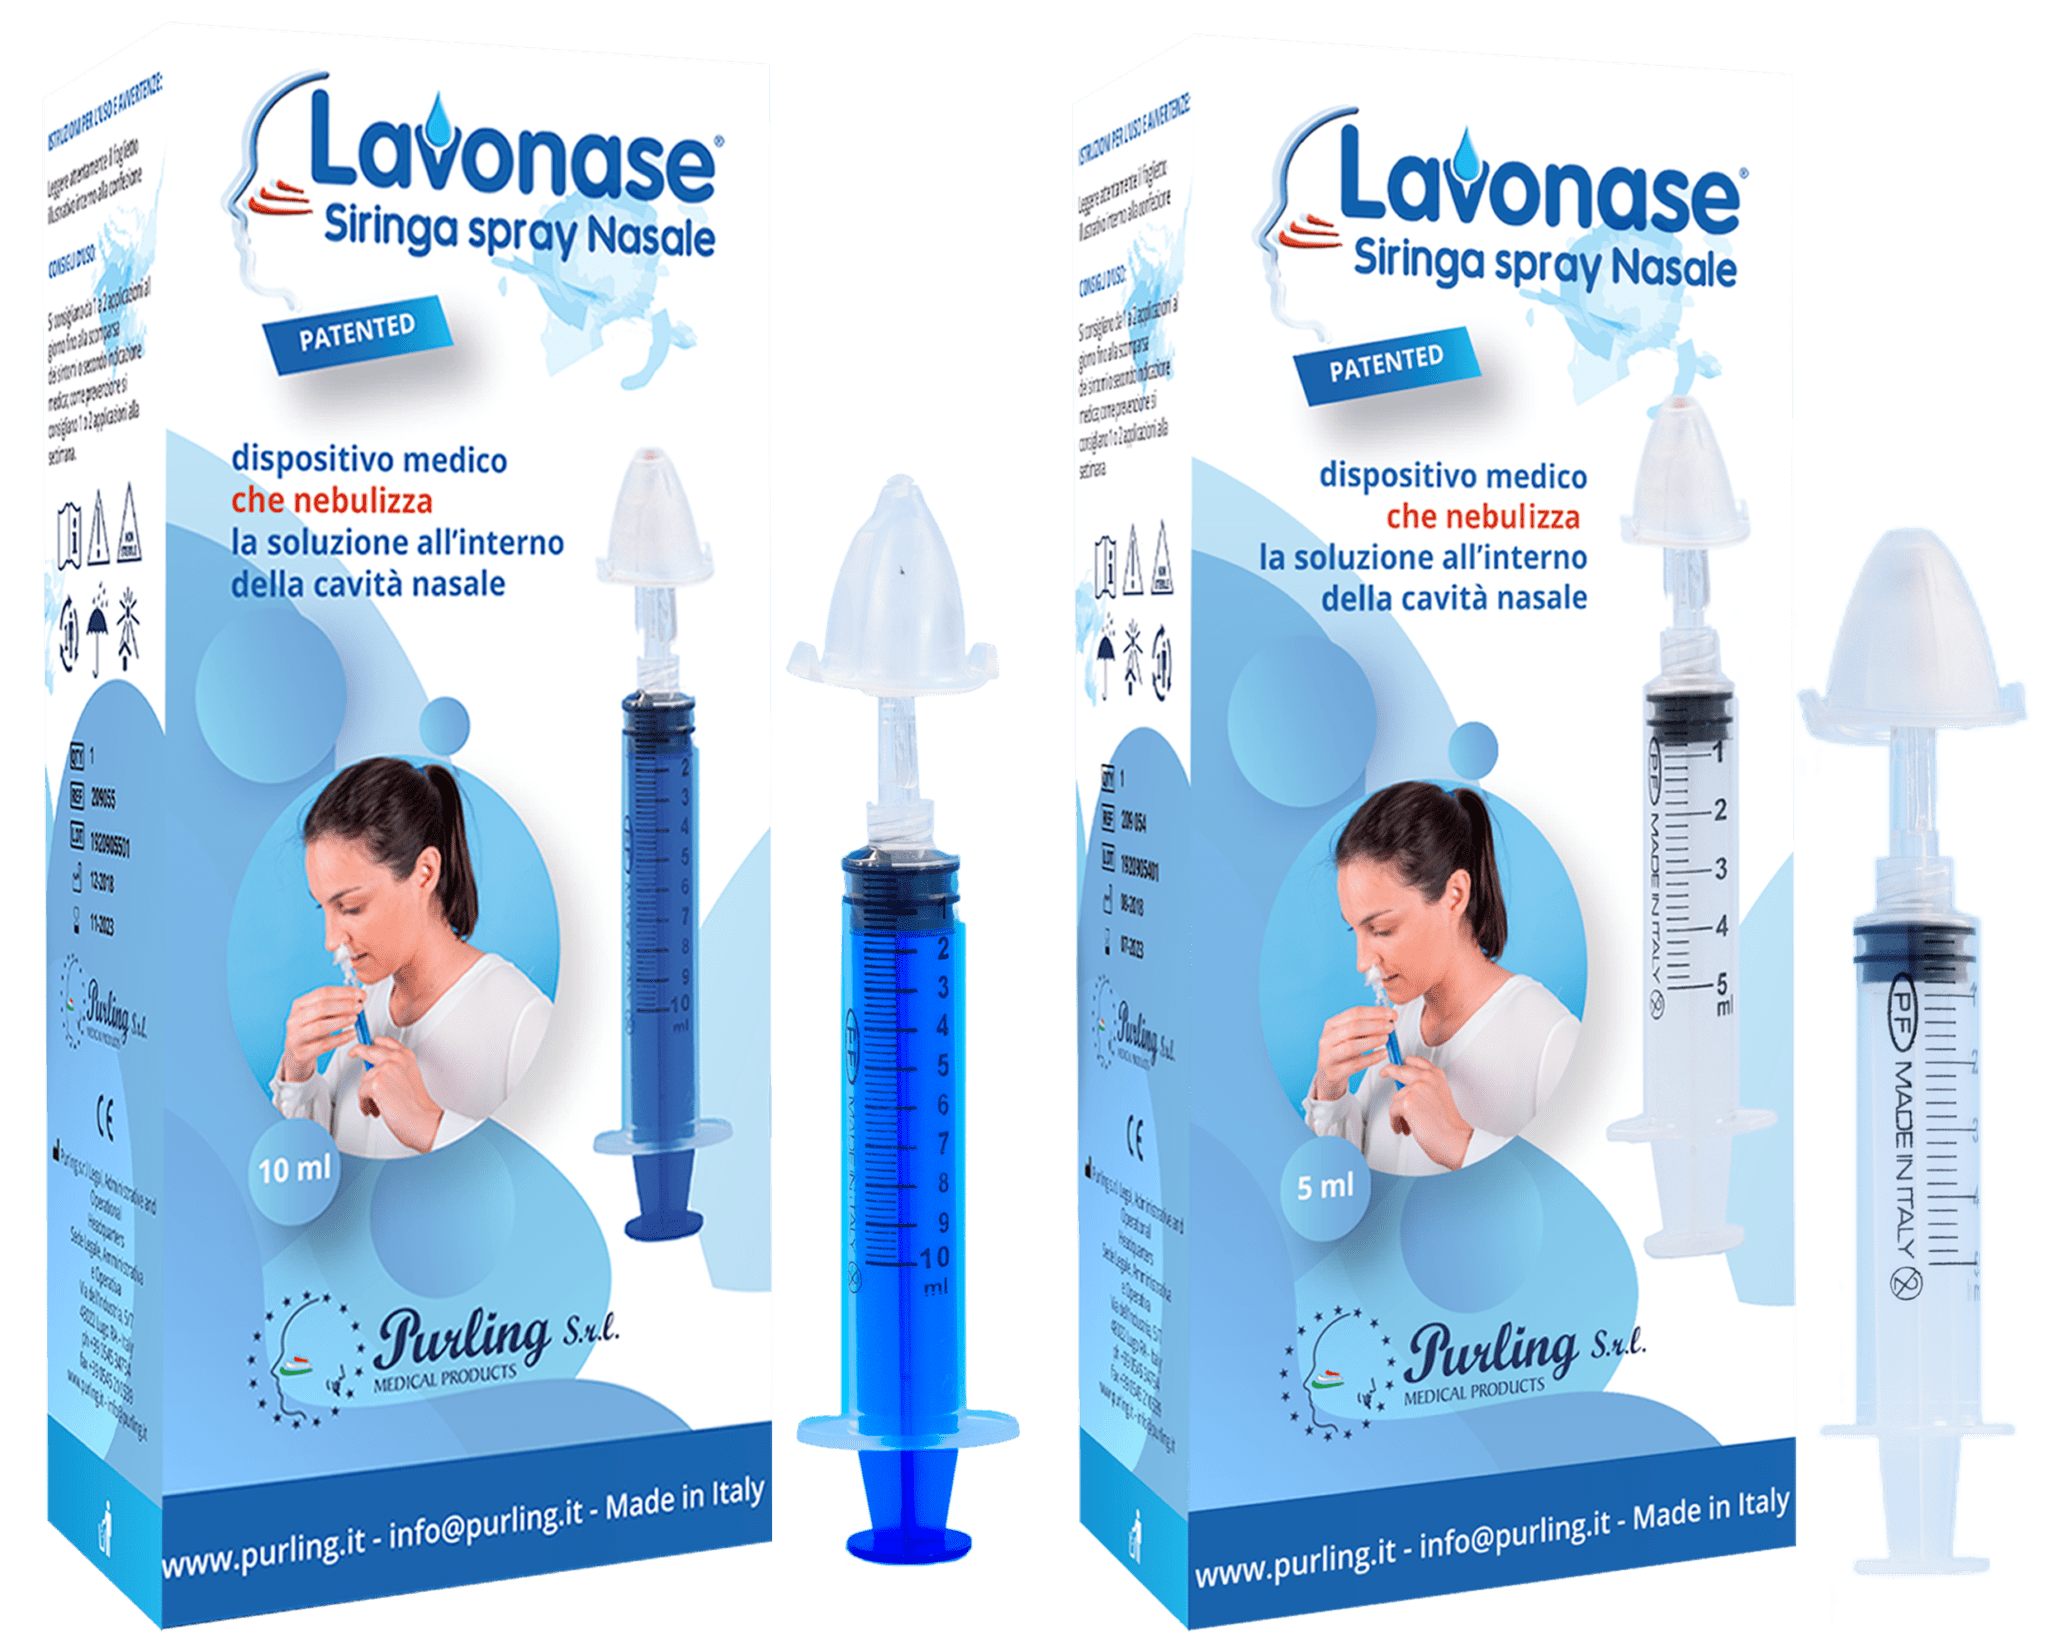 Lavonase Siringa Spray Nasale - Purling